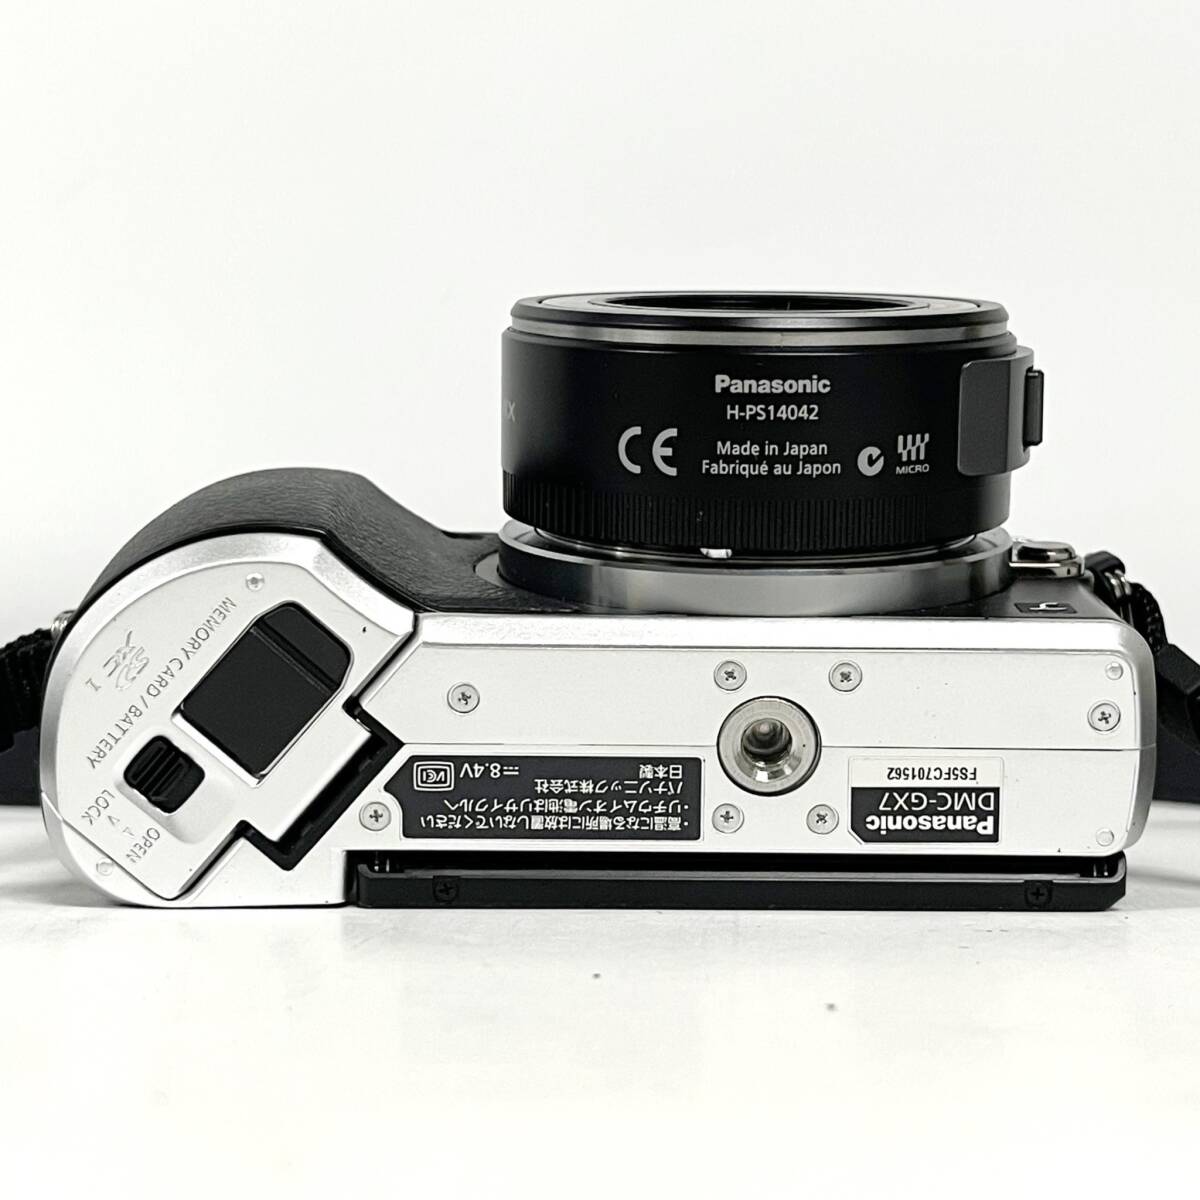 1円~【動作未確認】パナソニック Panasonic LUMIX DMC-GX7 G X VARIO 1:3.5-5.6/14-42 ASPH. POWER O.I.S. ミラーレス一眼カメラ G143092